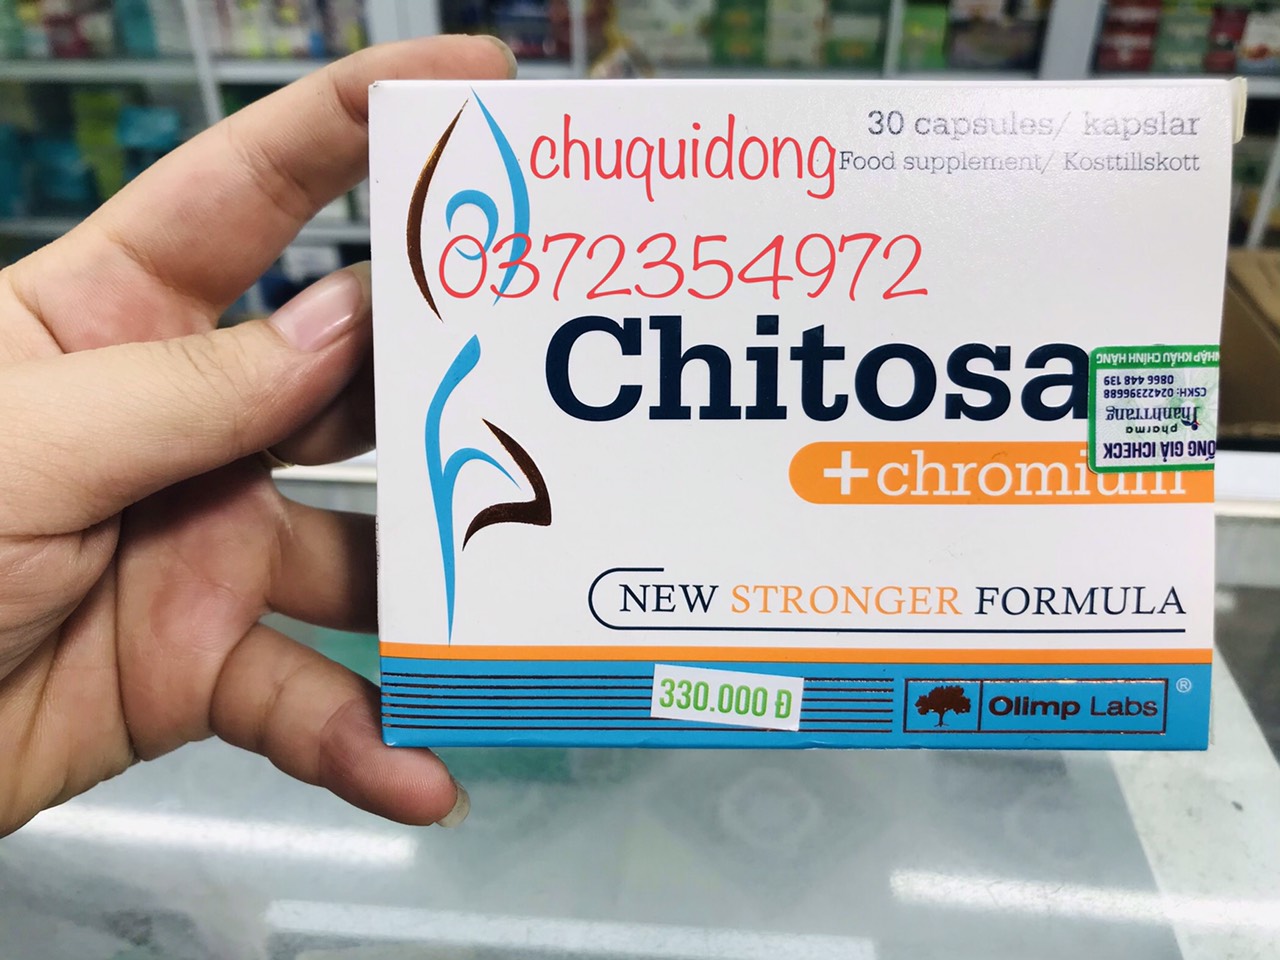 Chitosan + Chromium - Hỗ trợ giảm cân an toàn, giảm nguy cơ béo phì